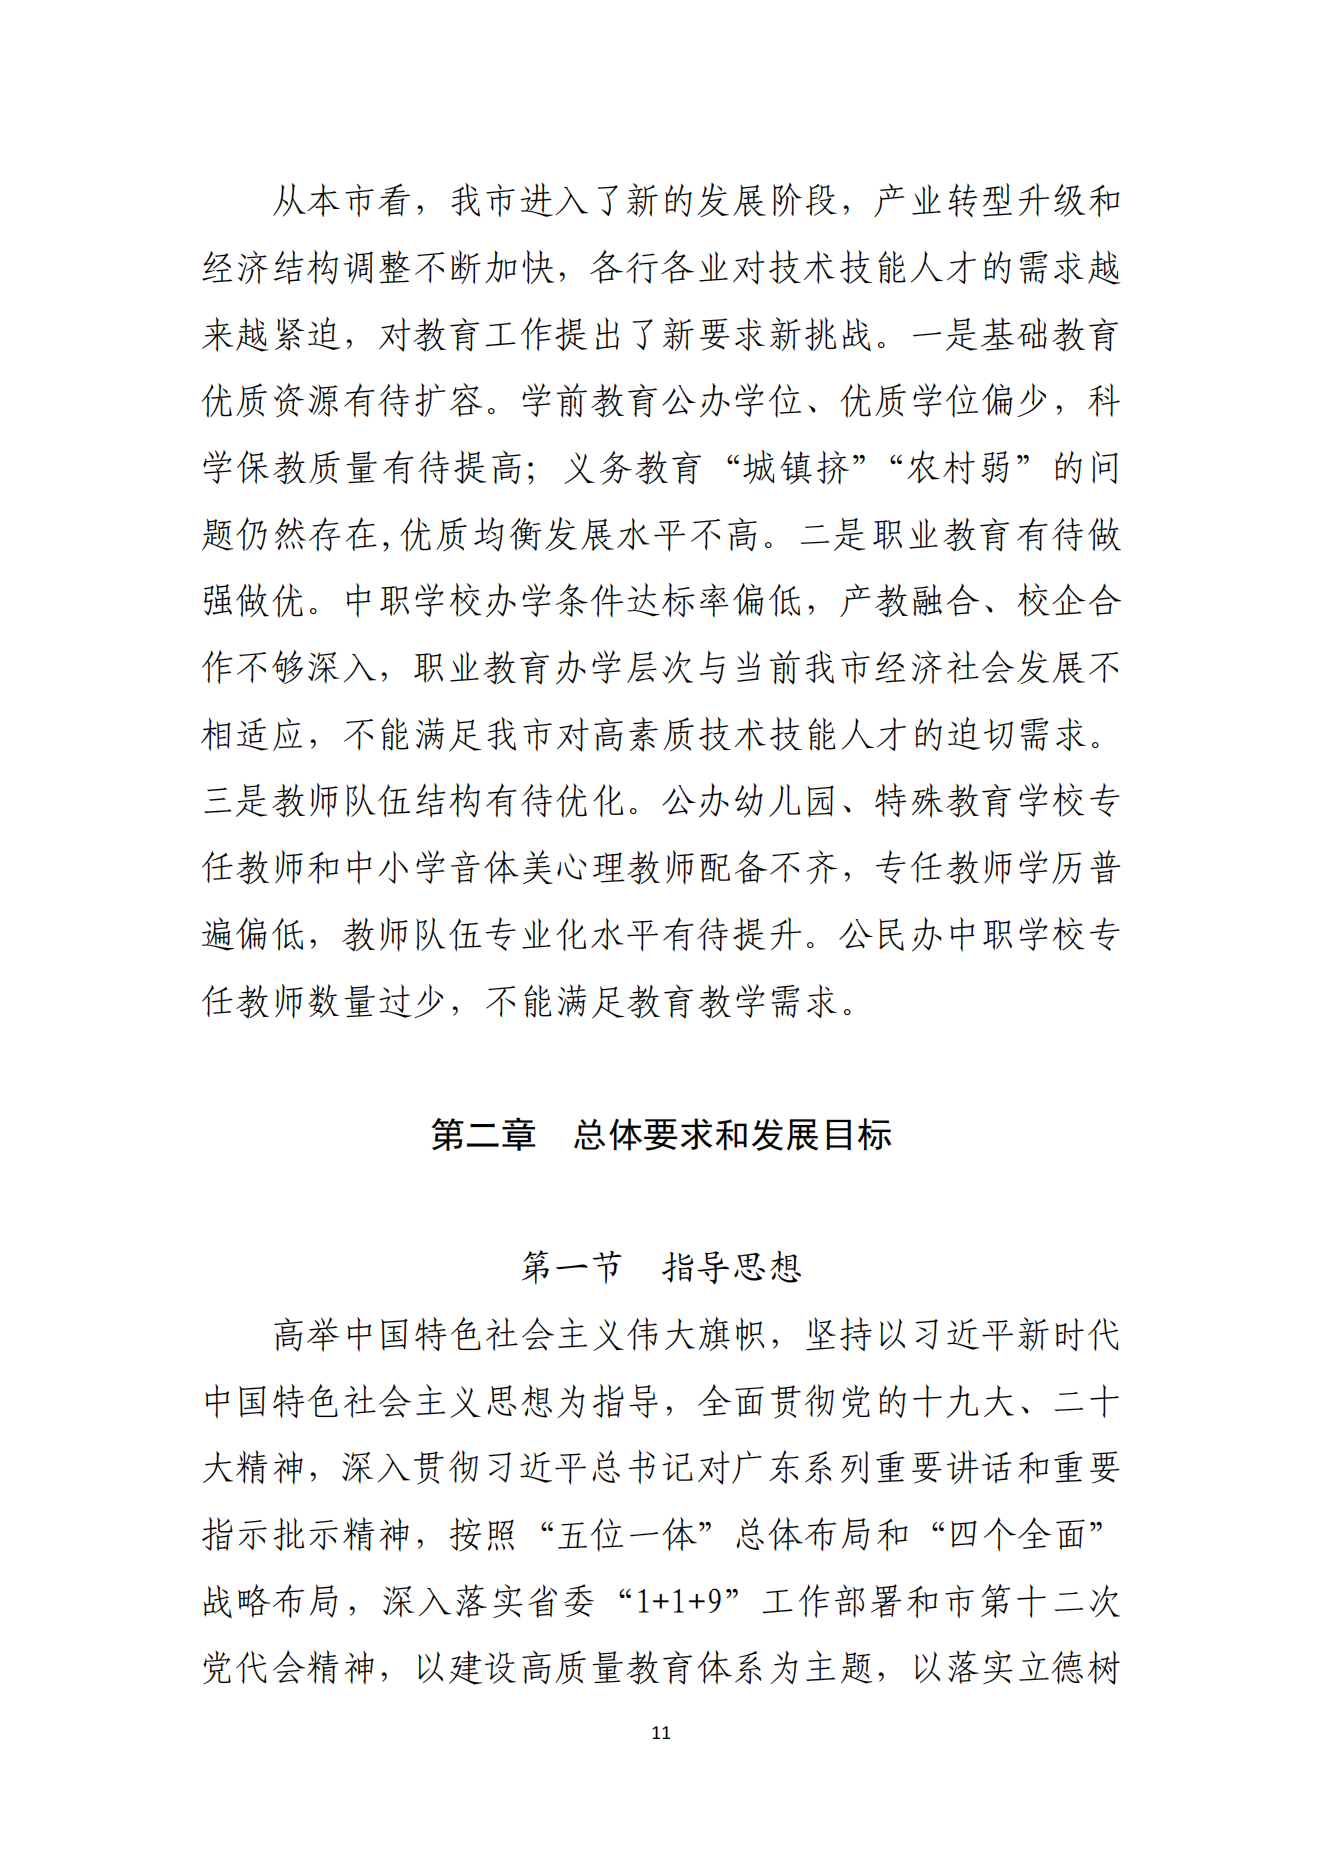 湛江市人民政府办公室关于印发湛江市教育发展“十四五”规划的通知_10.png